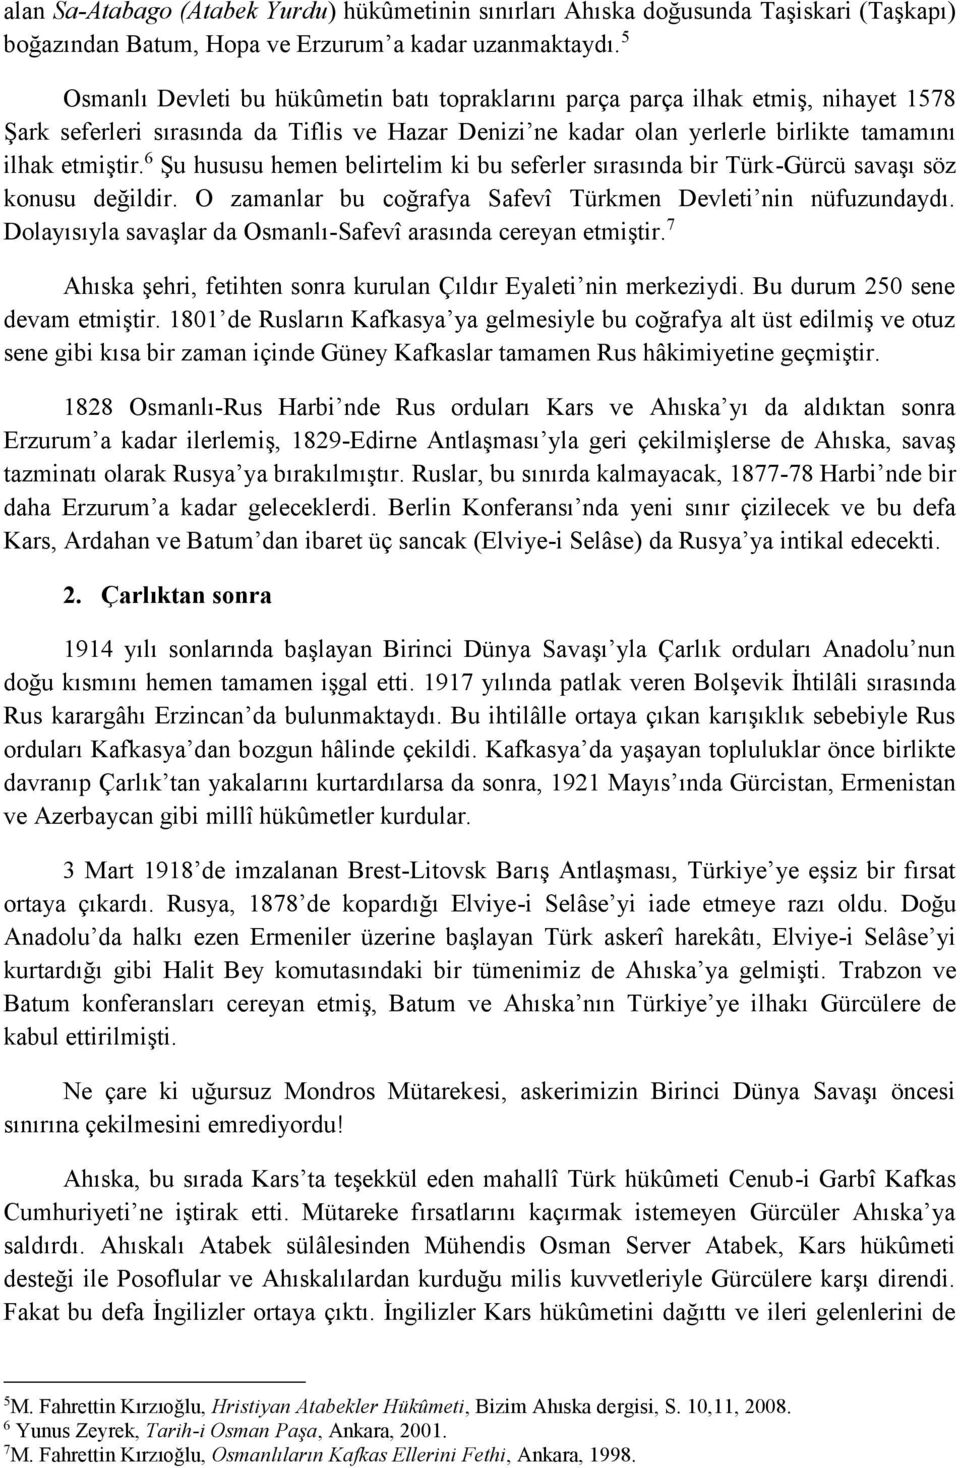 6 Şu hususu hemen belirtelim ki bu seferler sırasında bir Türk-Gürcü savaşı söz konusu değildir. O zamanlar bu coğrafya Safevî Türkmen Devleti nin nüfuzundaydı.